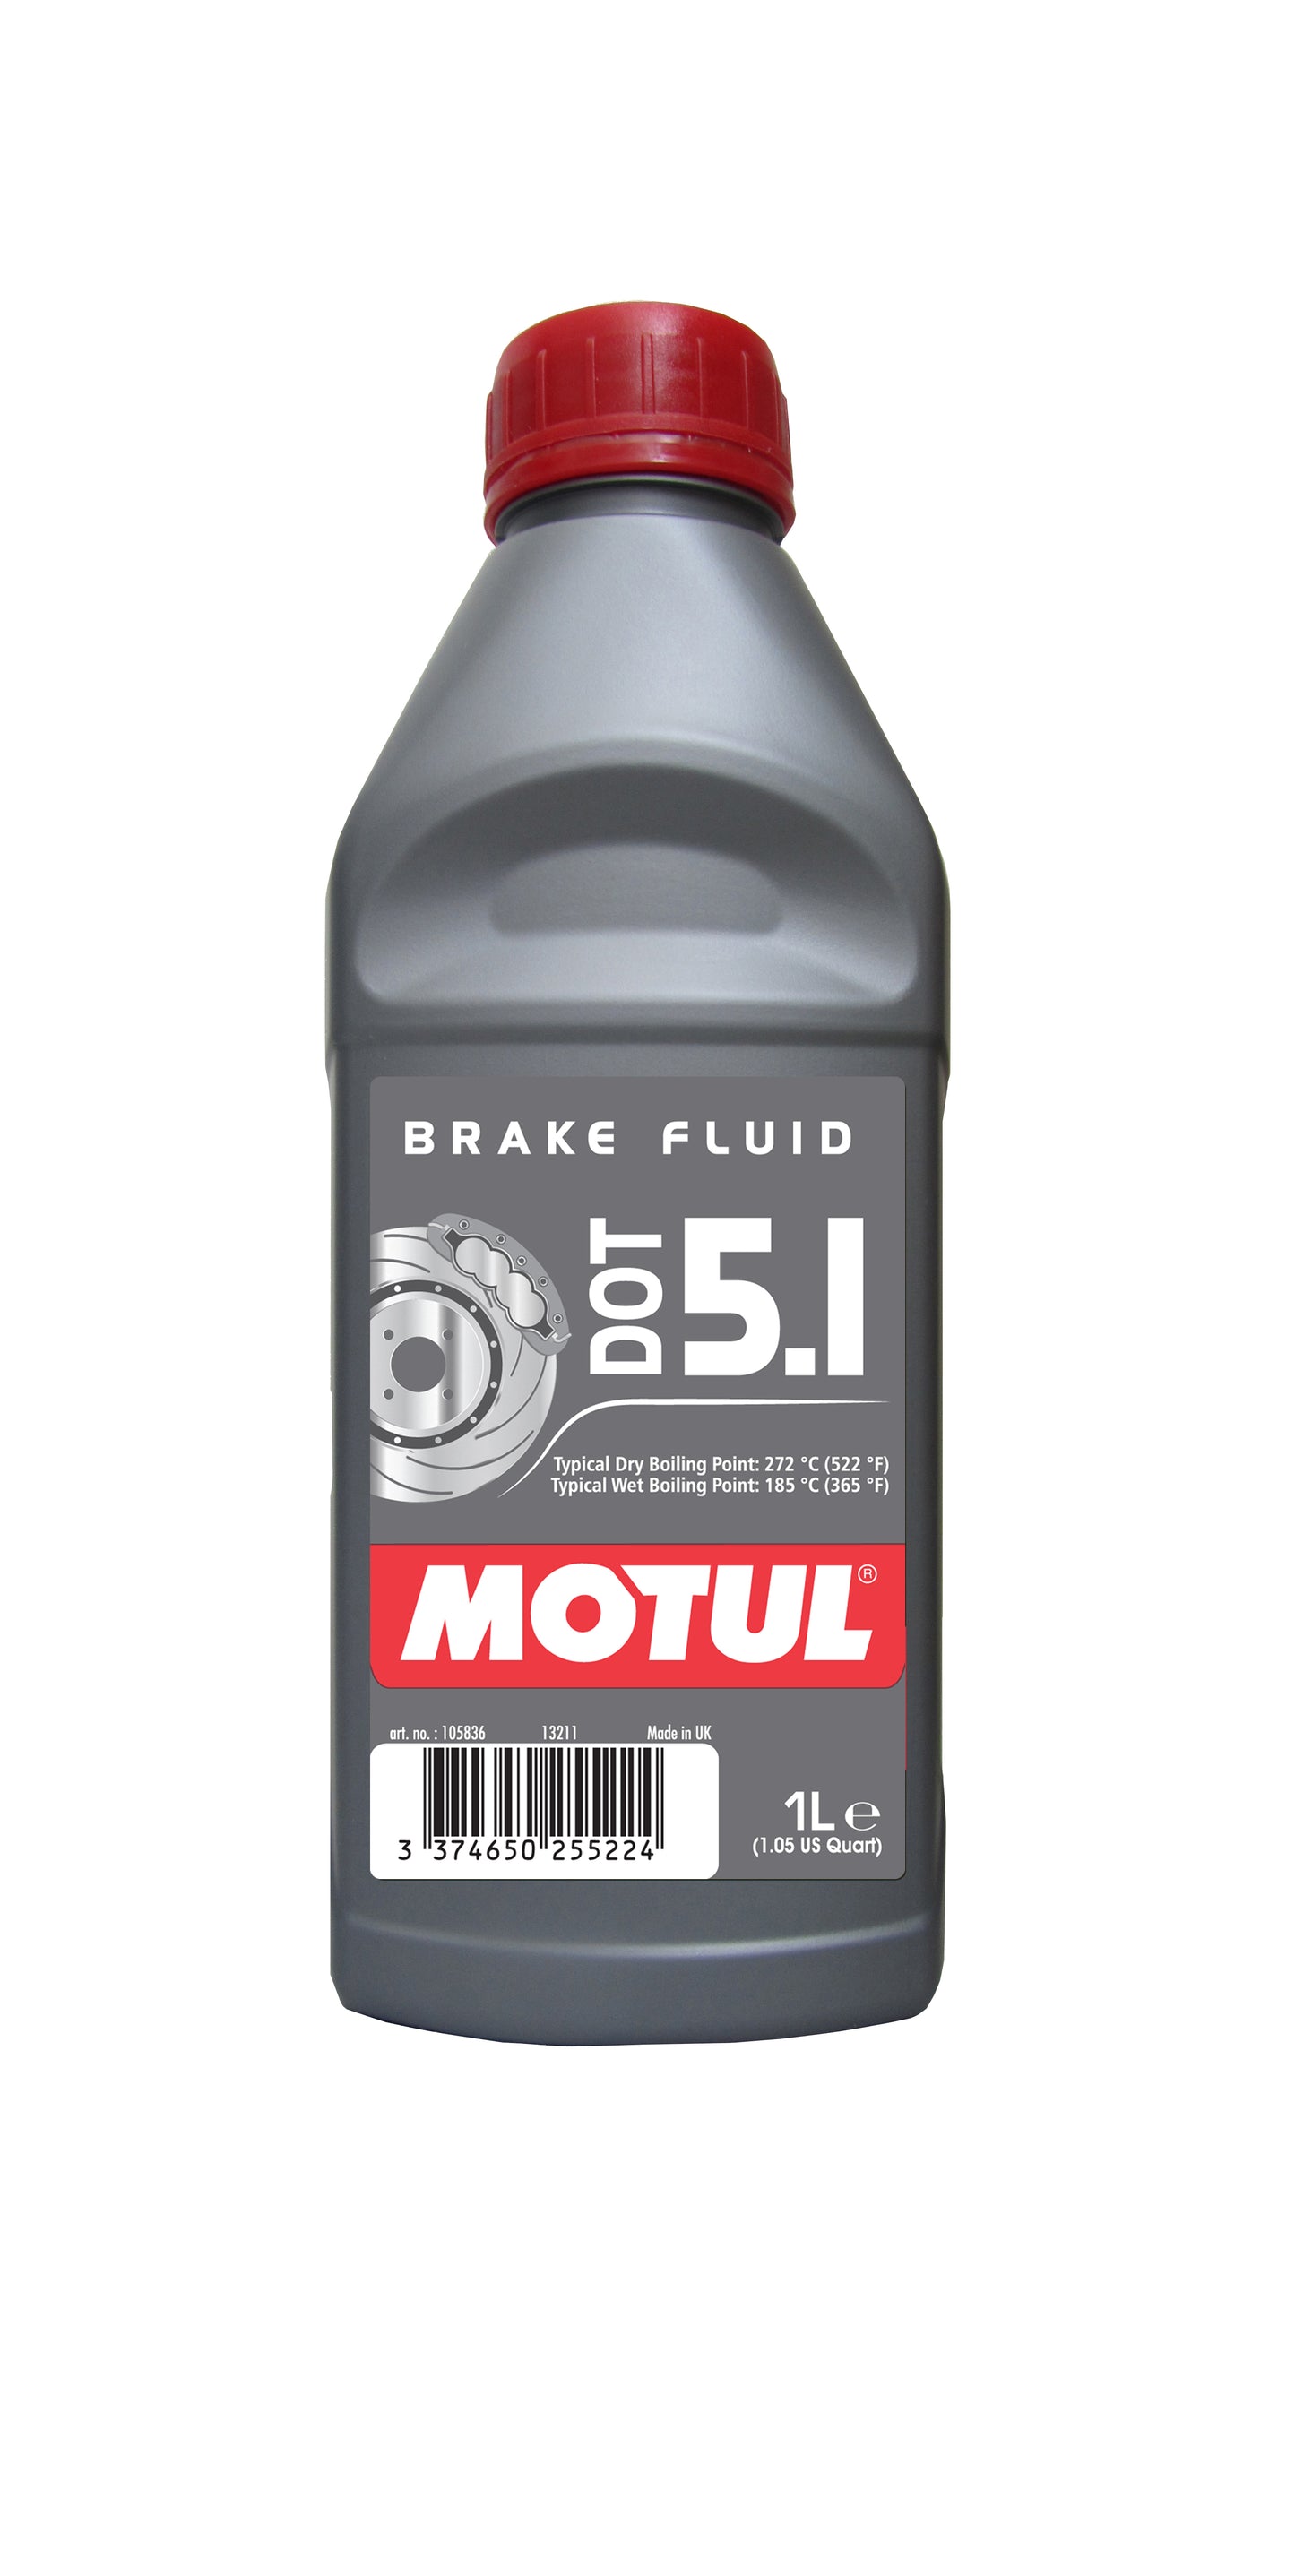 Motul DOT 5.1 BRAKE FLUID, 1 liter